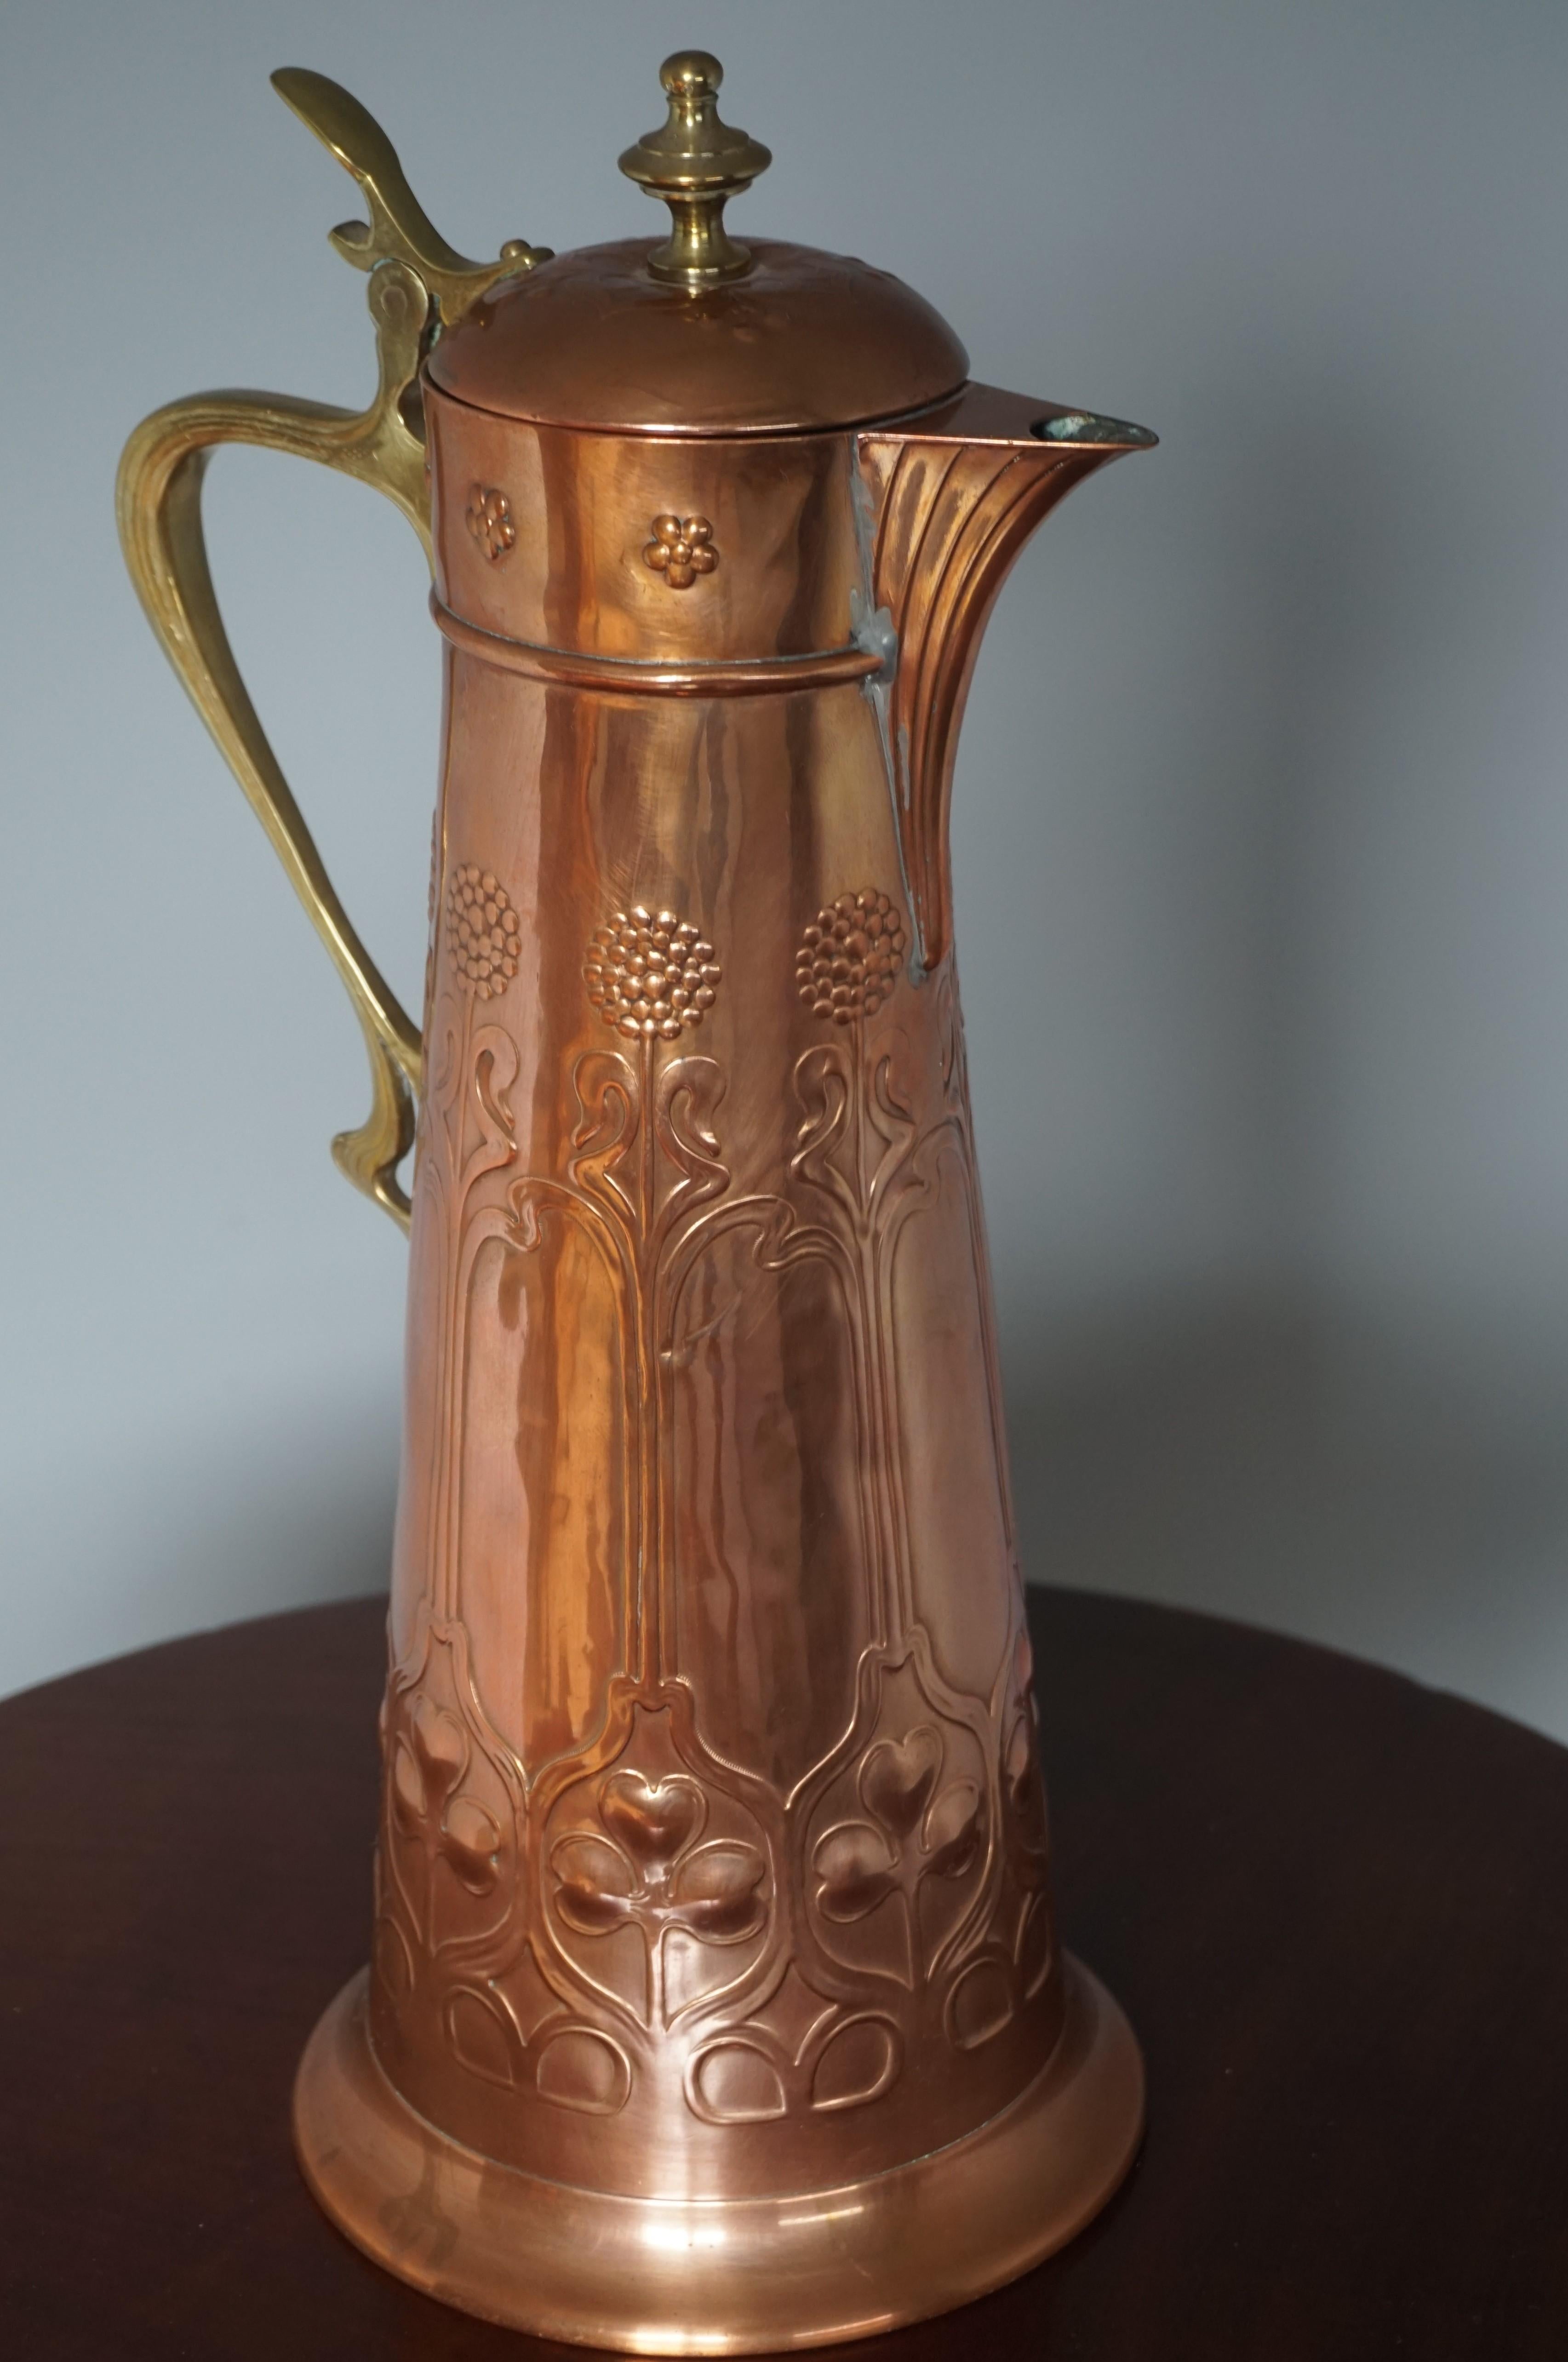 Jugendstil Stunning Arts & Crafts WMF Red Copper & Brass Jug or Vase with Stylized Flowers For Sale